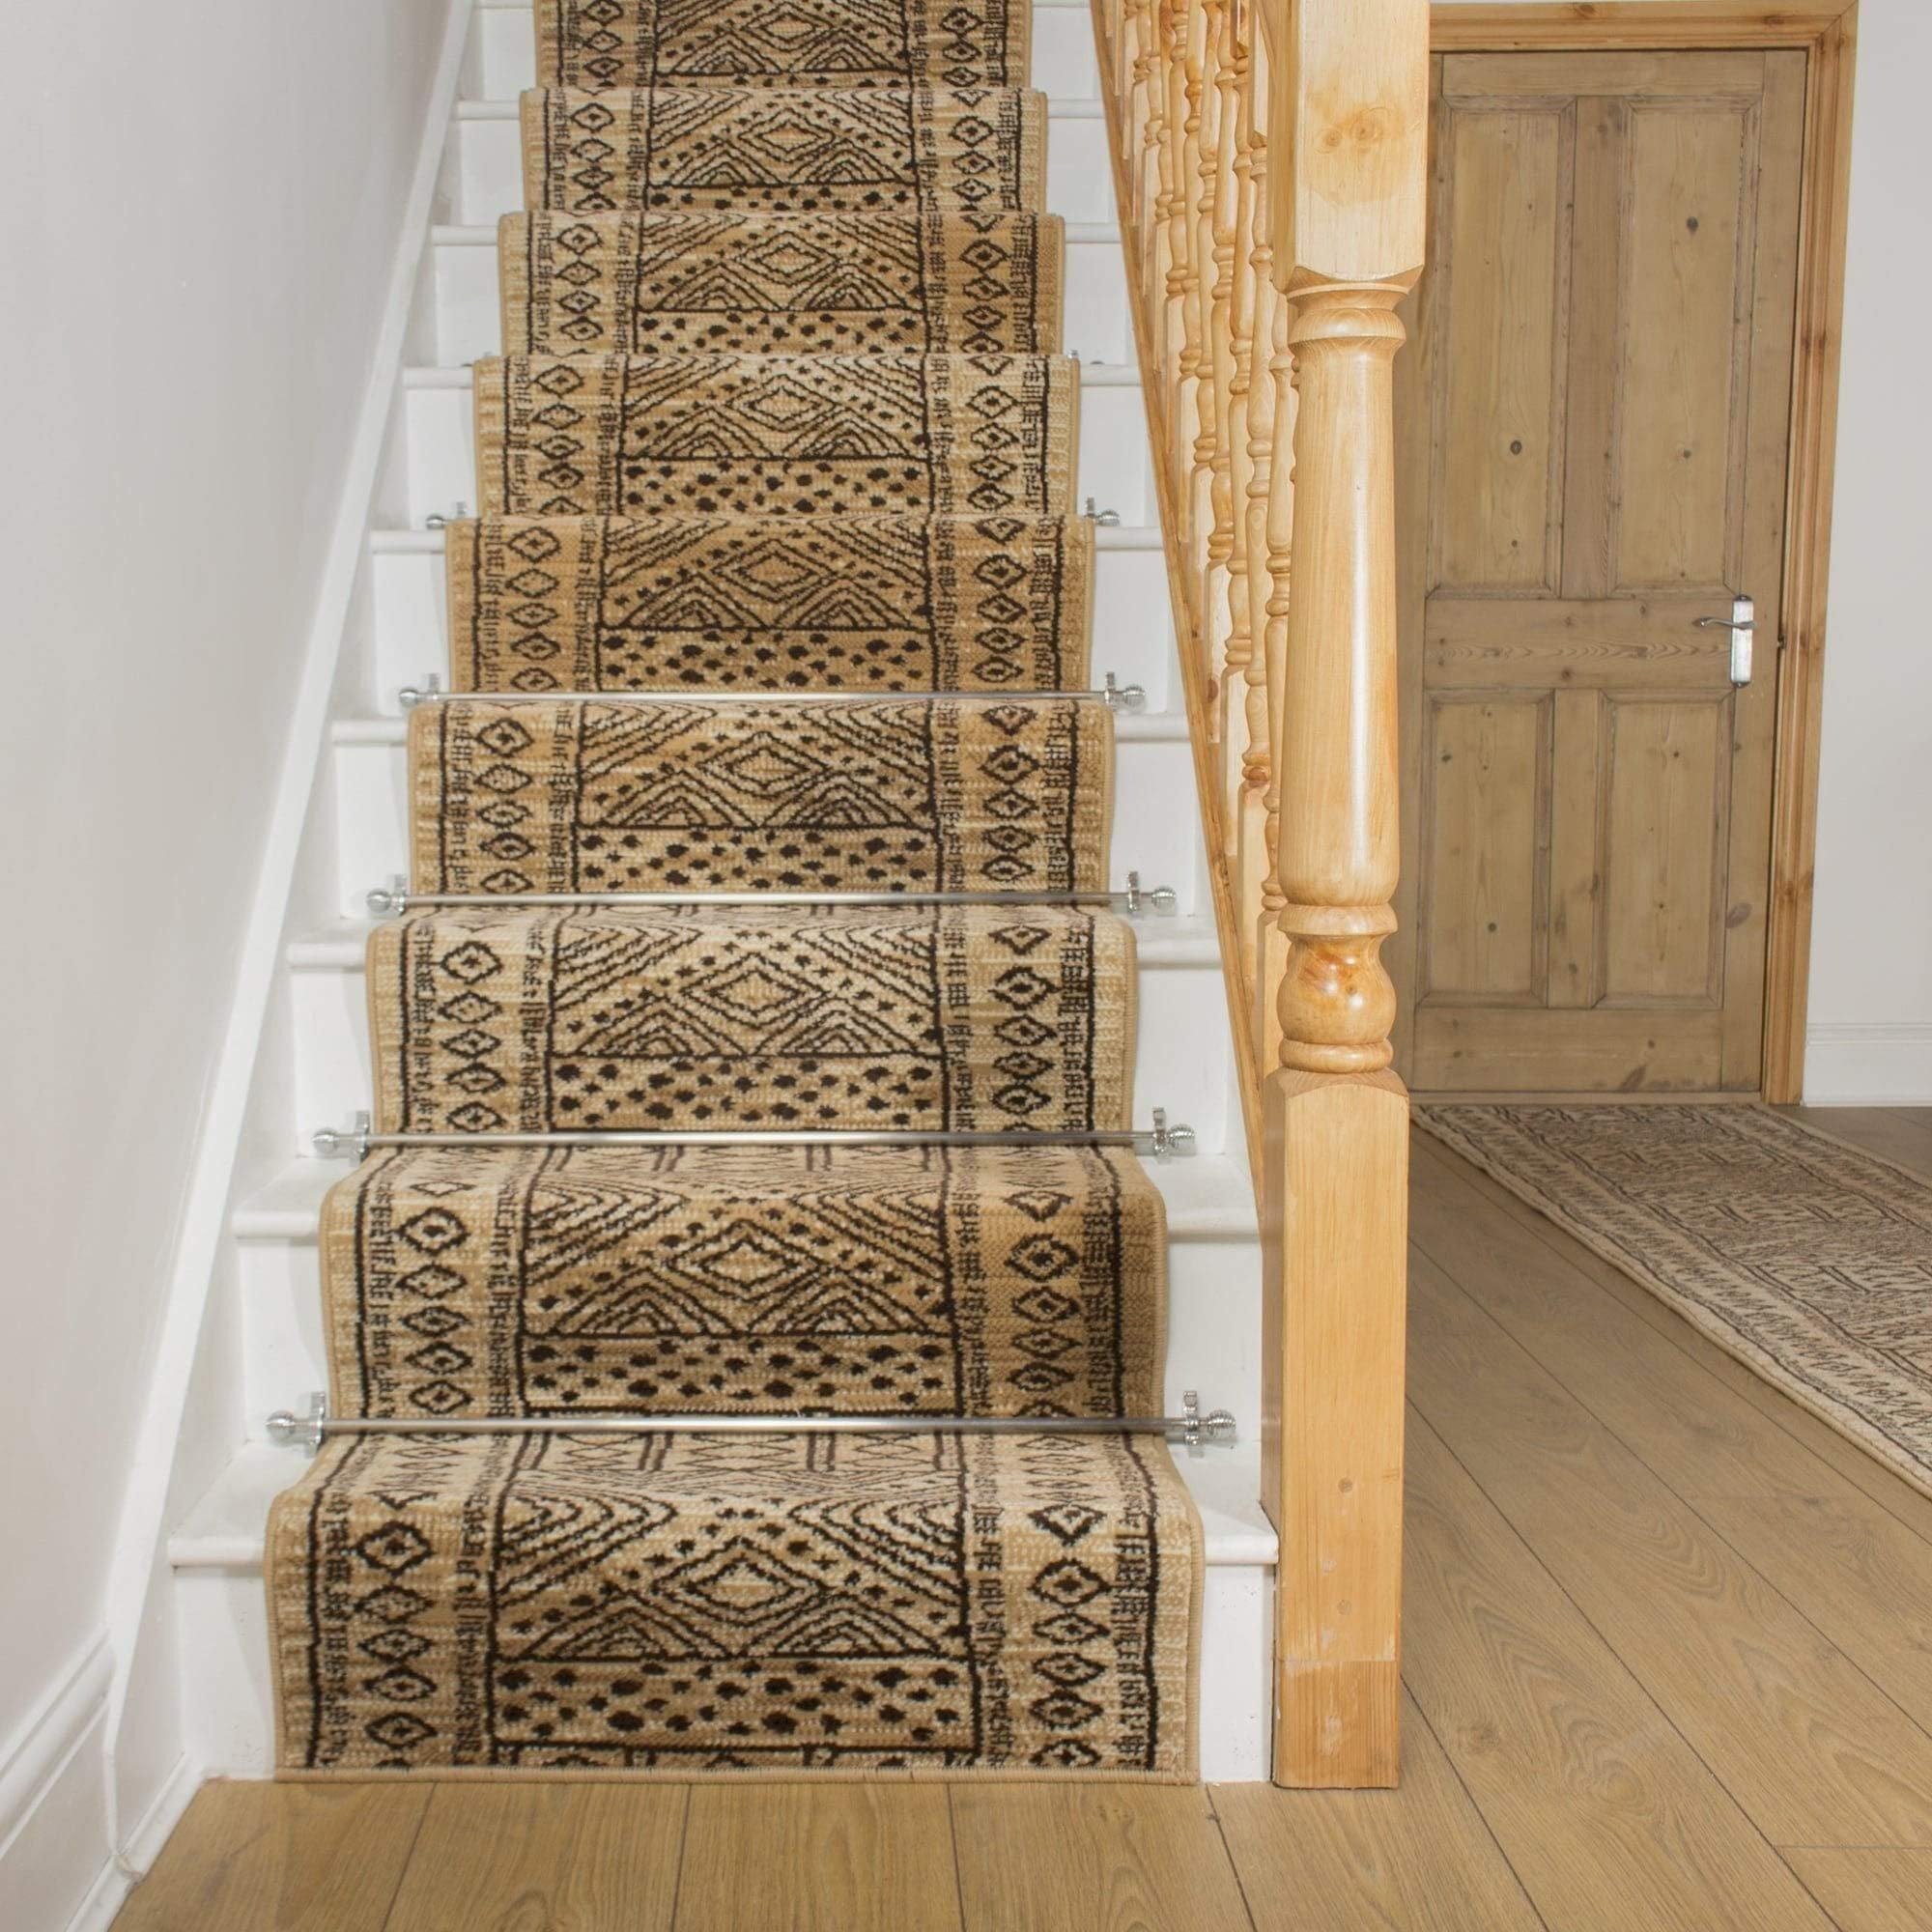 Berber Afrikans Stair Carpet Runner - image 1